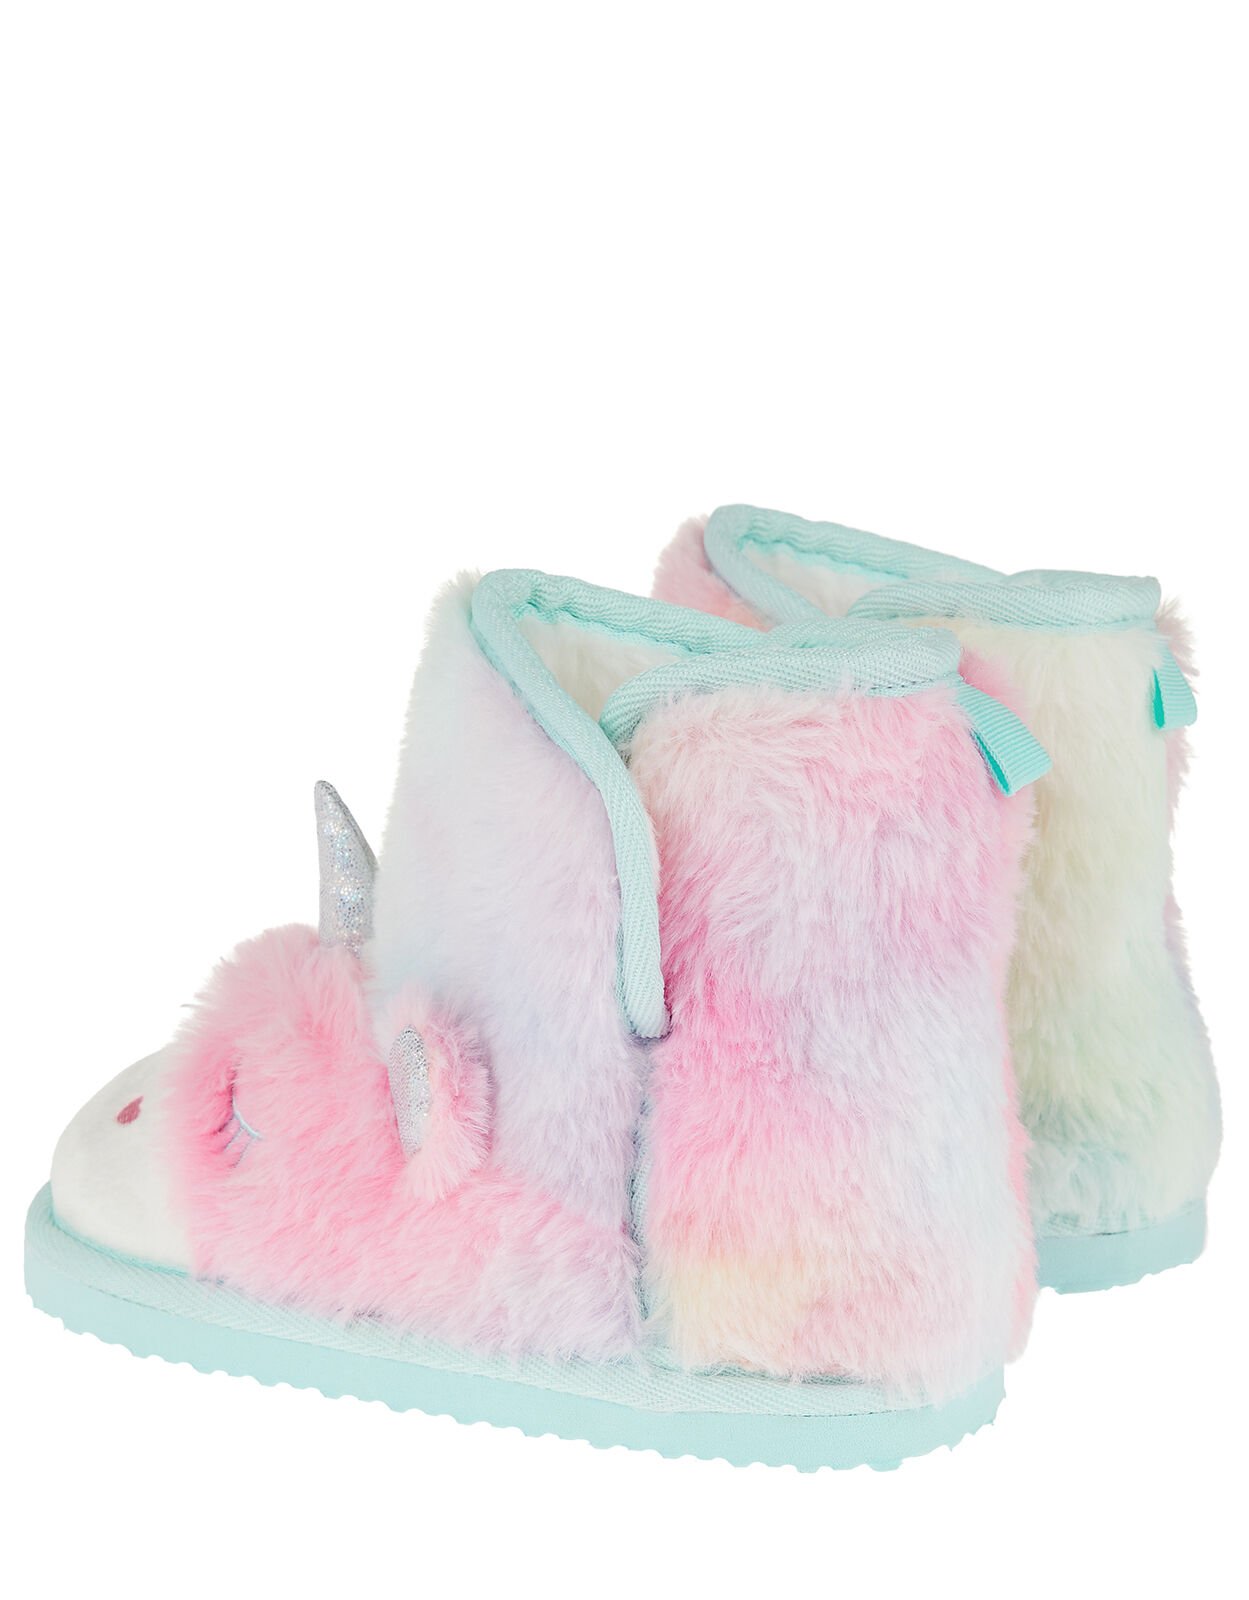 slipper boots for girls